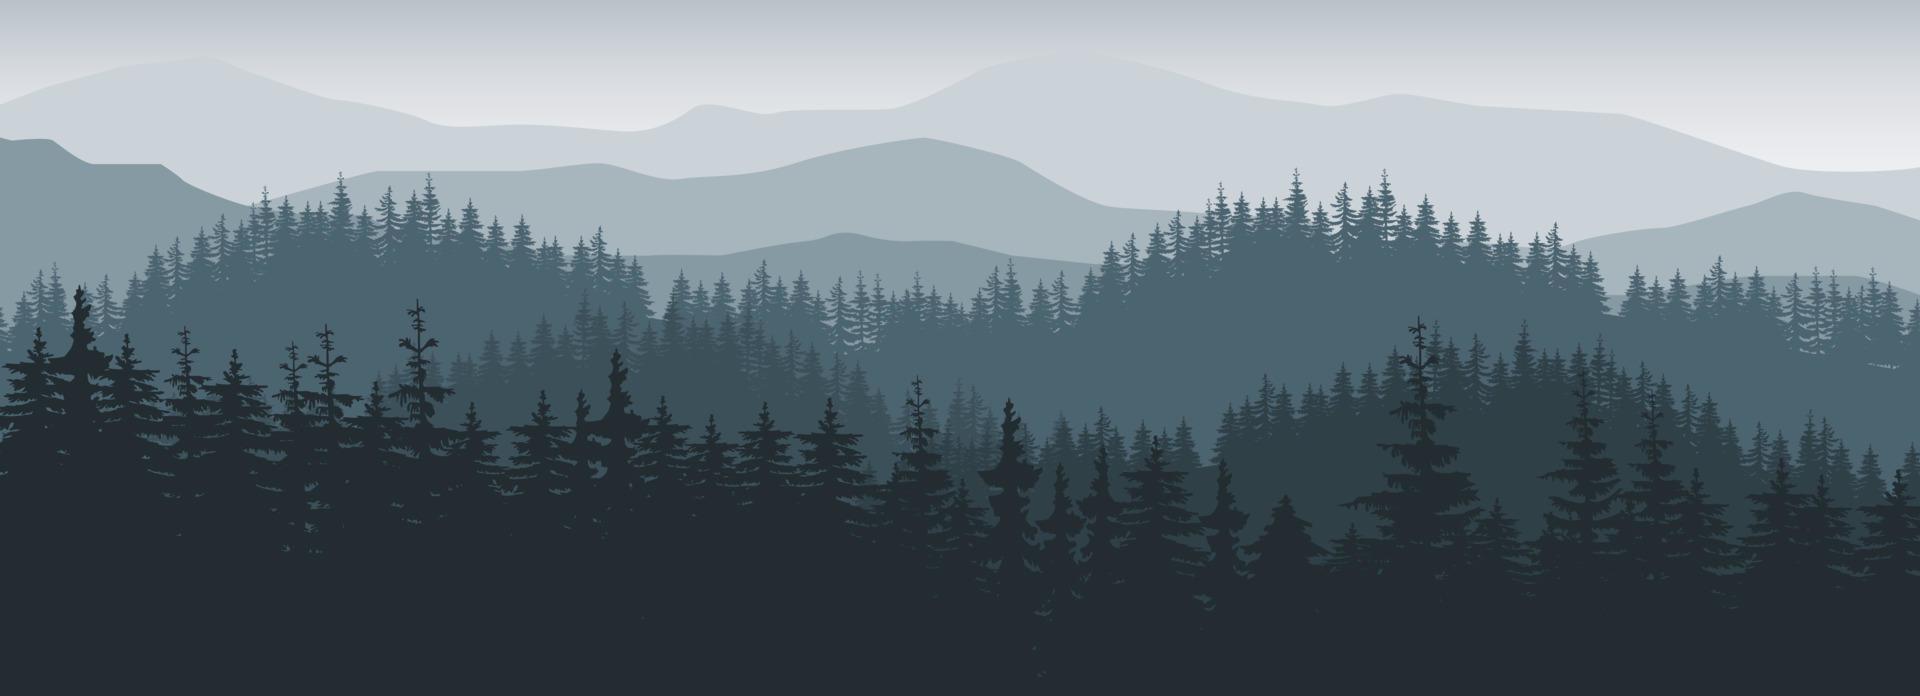 vettore di sfondo del paesaggio con nebbia di montagne.